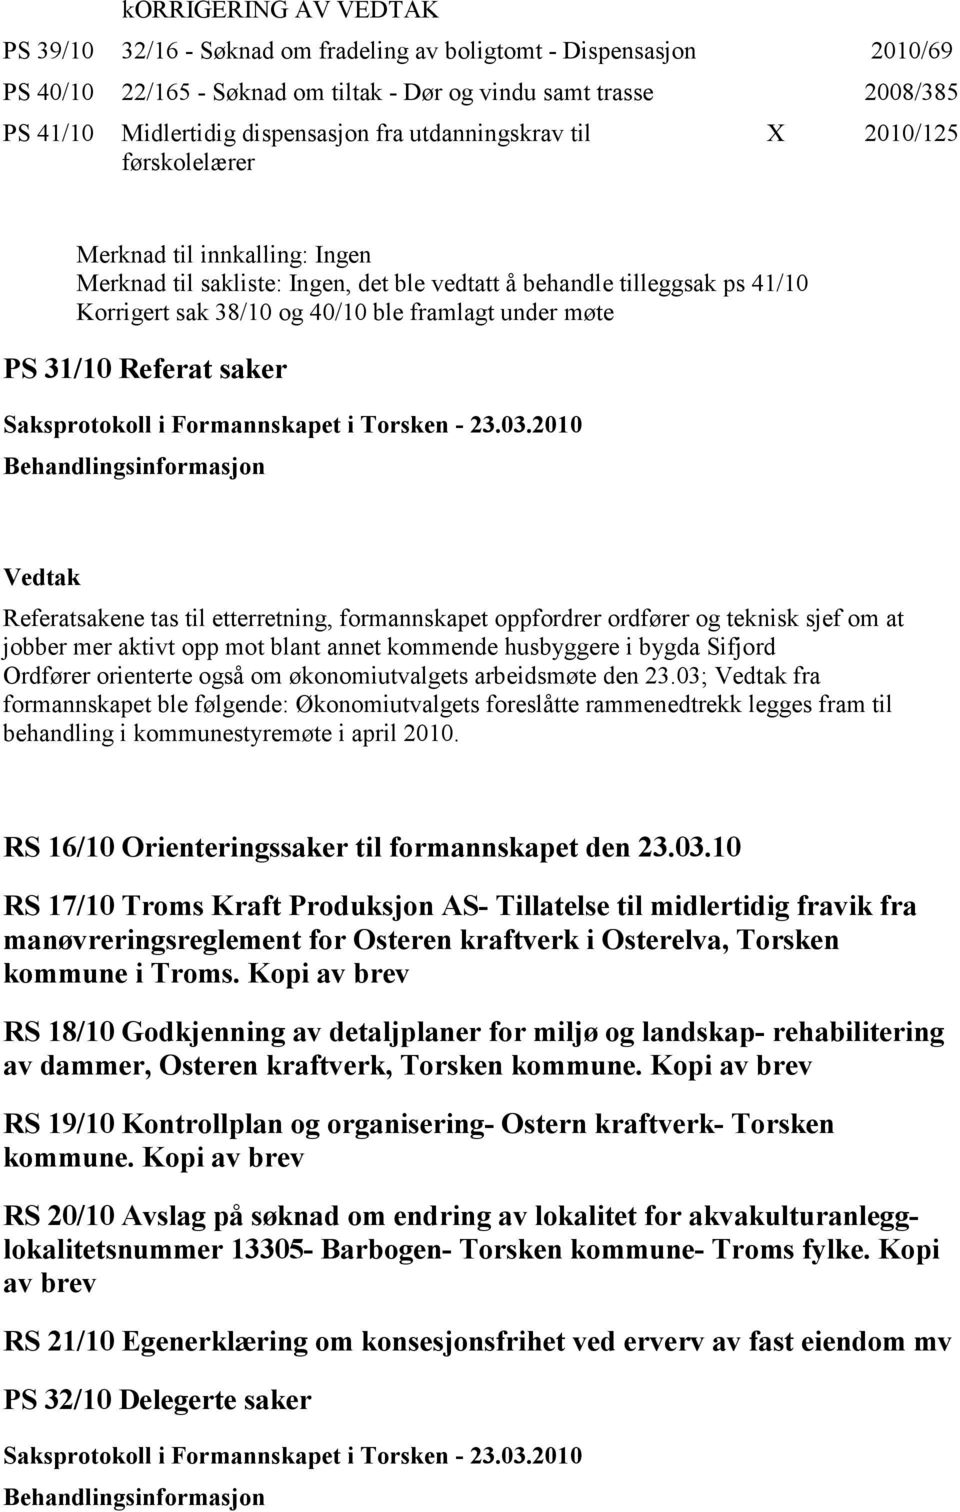 under møte PS 31/10 Referat saker Referatsakene tas til etterretning, formannskapet oppfordrer ordfører og teknisk sjef om at jobber mer aktivt opp mot blant annet kommende husbyggere i bygda Sifjord